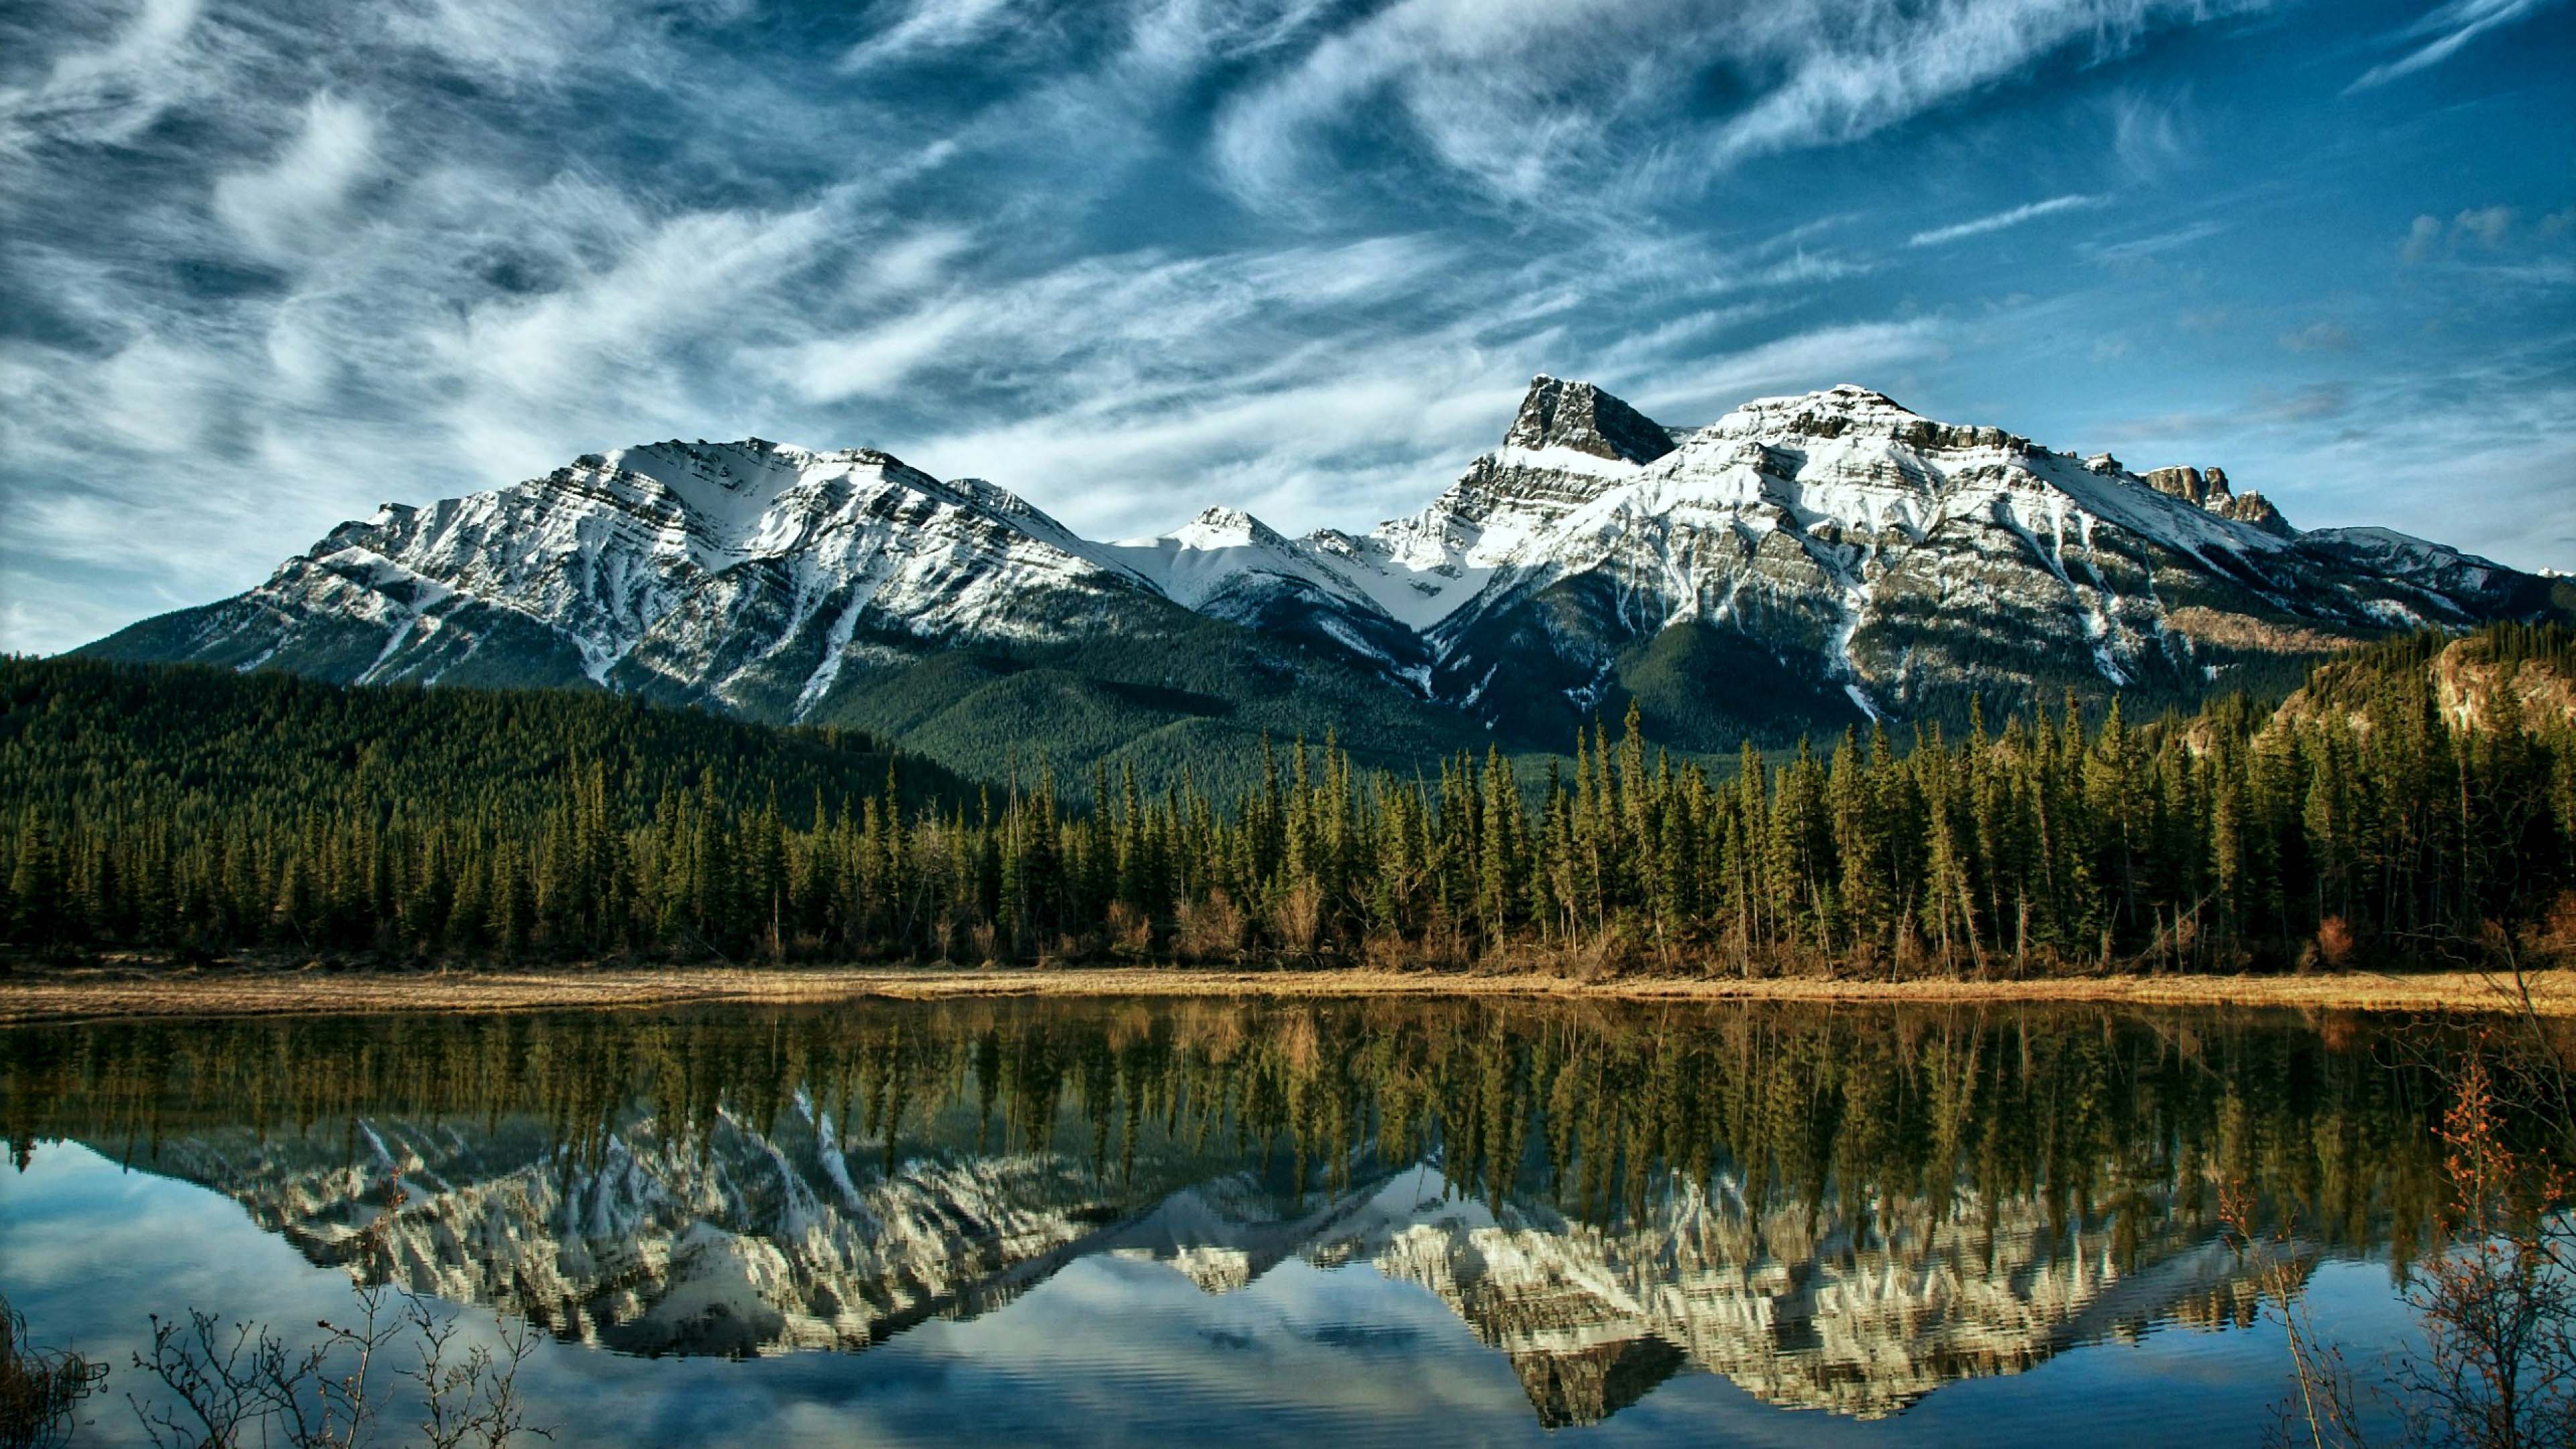 Картинки на обои. Гора Ассинибойн Канадские скалистые горы. Альберта Канада. Канада Альберта природа. Горы и лес Канада.